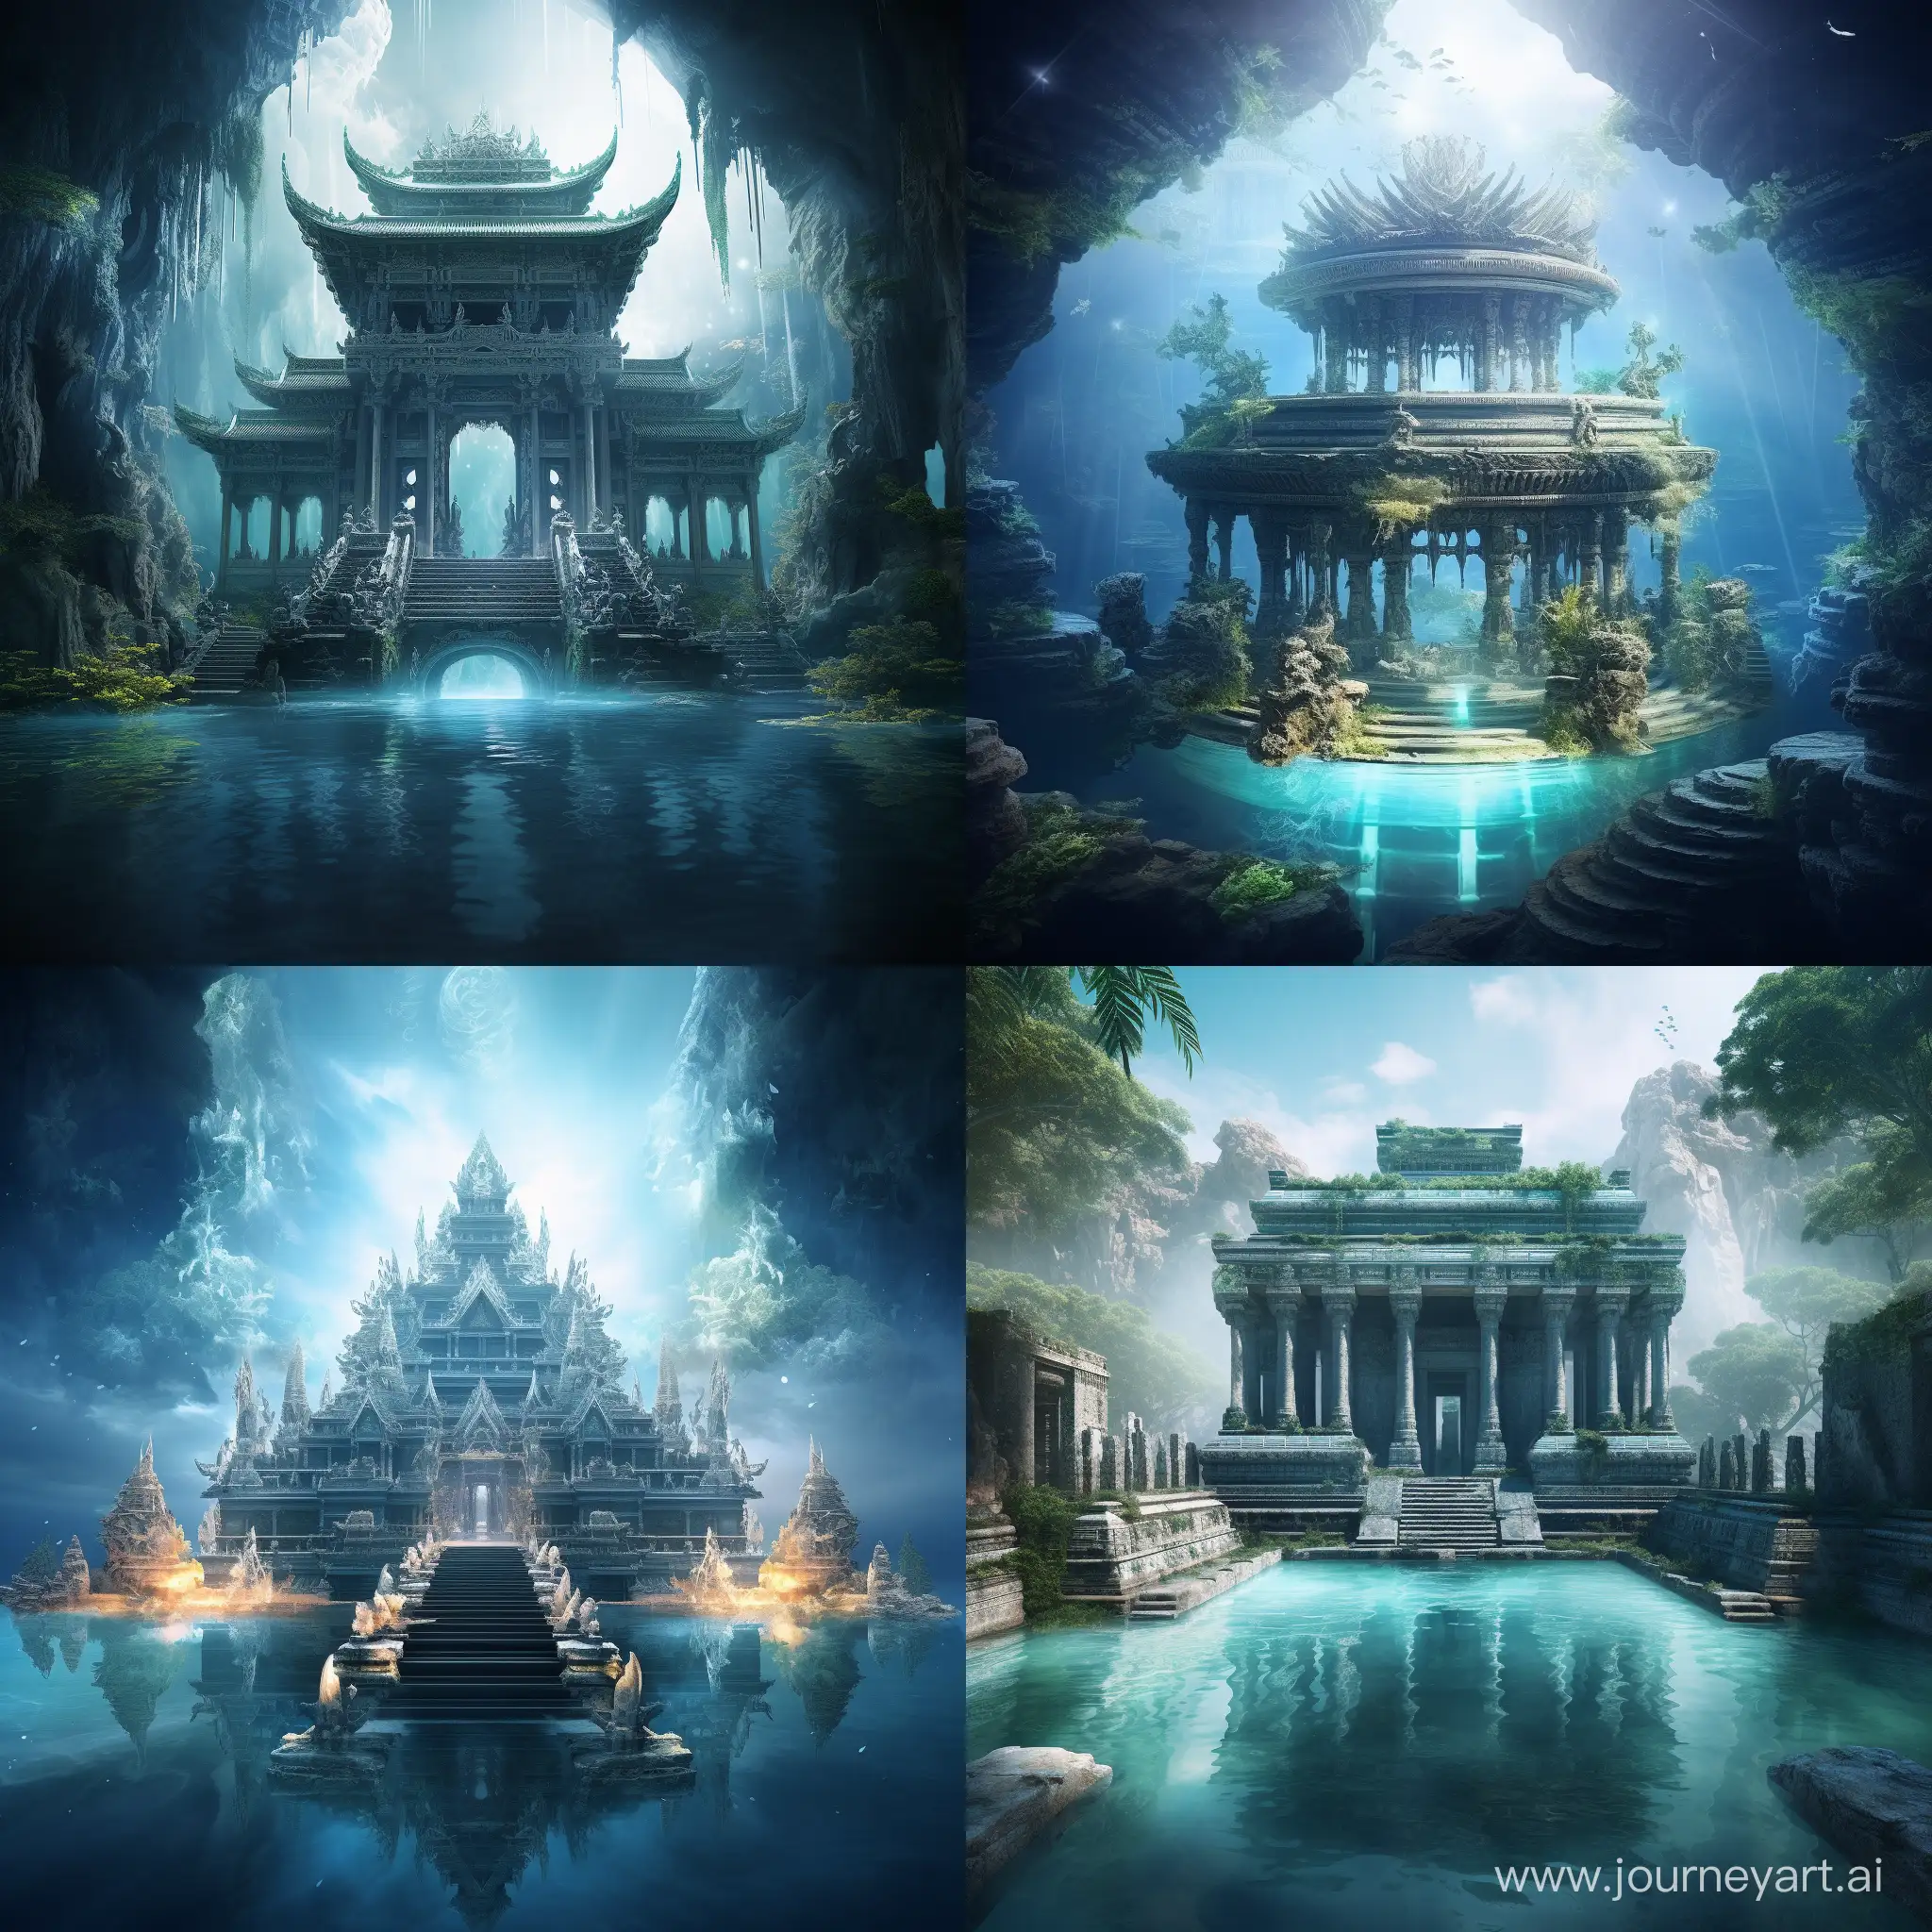 水上的寺庙，神秘的寺庙，寺庙结构清晰，神圣的氛围，超清